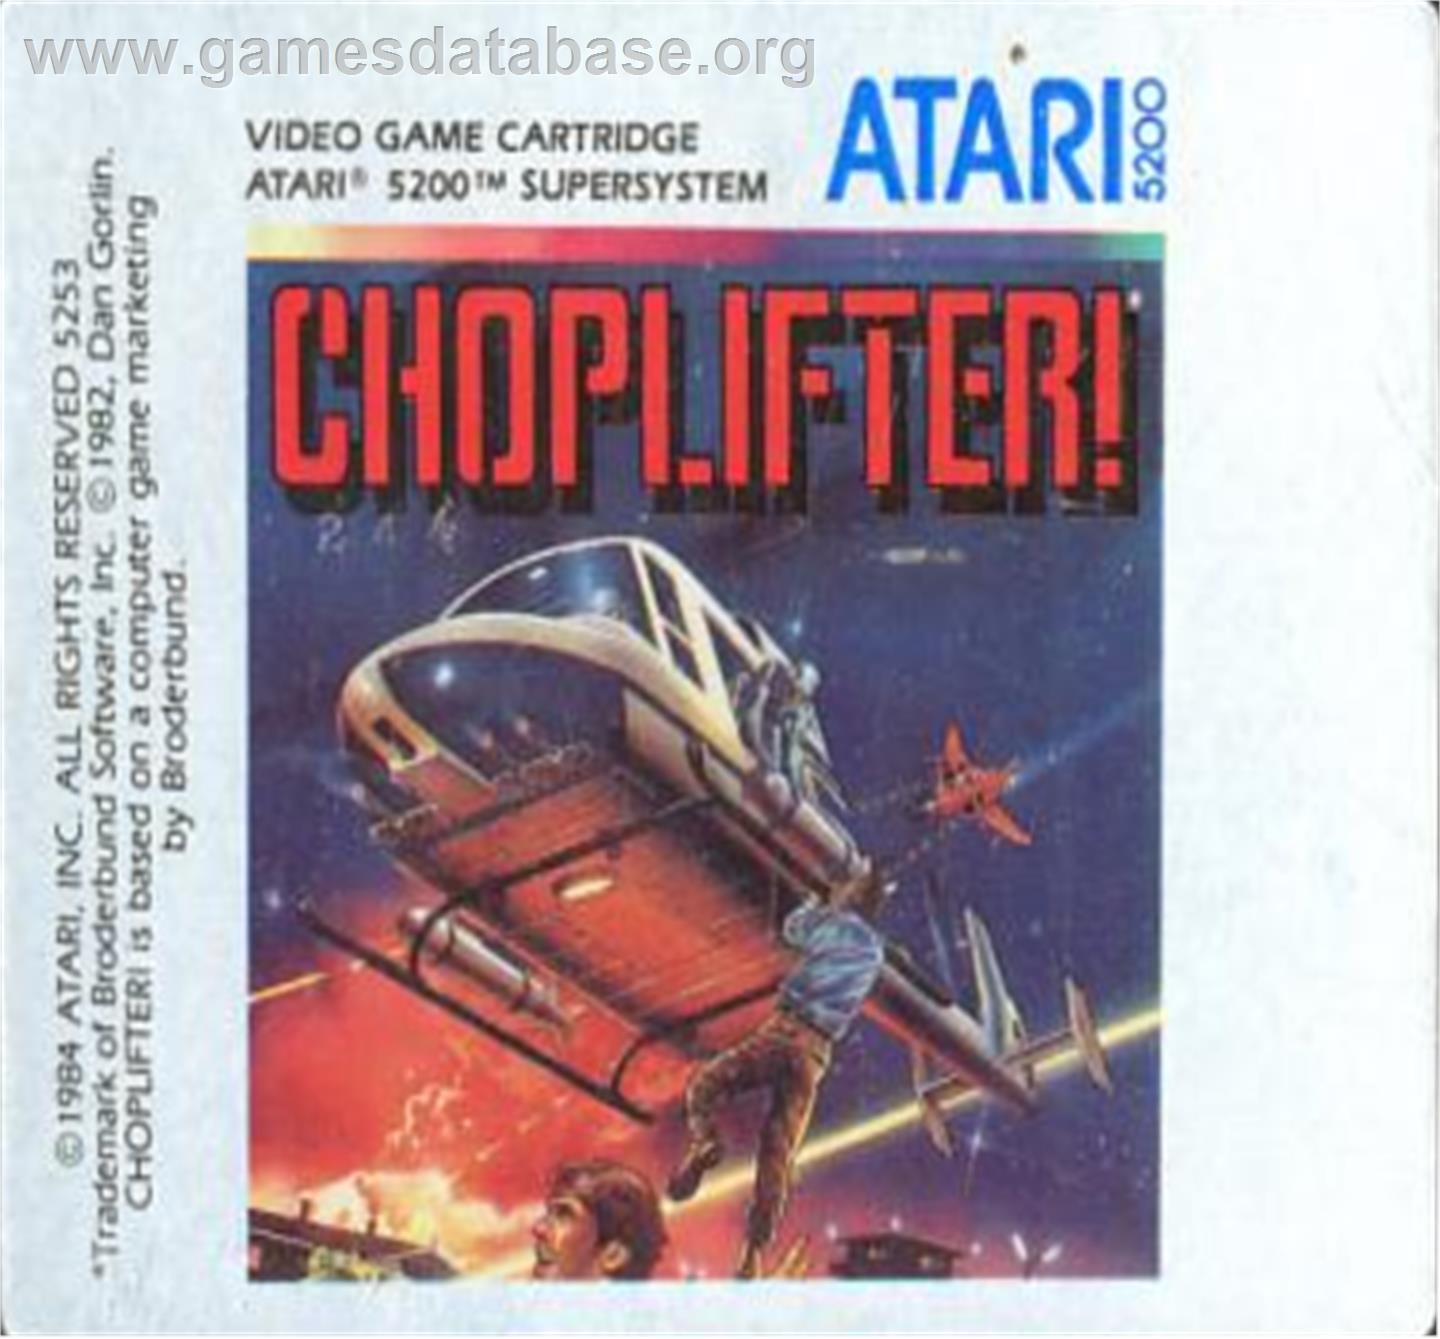 Choplifter - Atari 5200 - Artwork - Cartridge Top